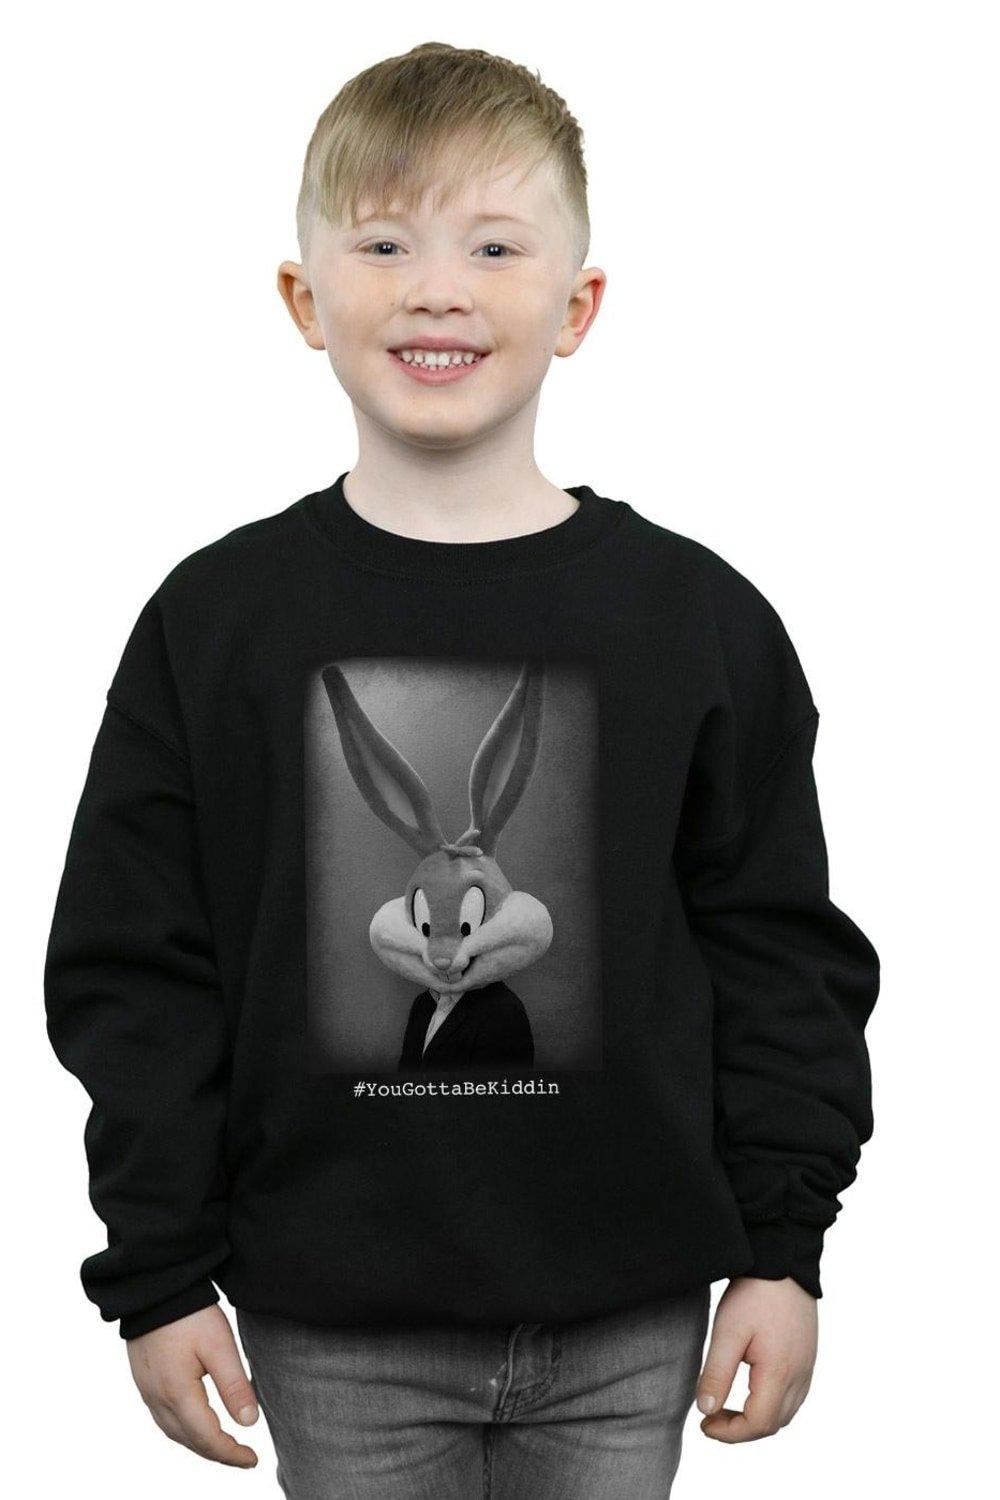 Bugs Bunny Yougottabekiddin Sweatshirt